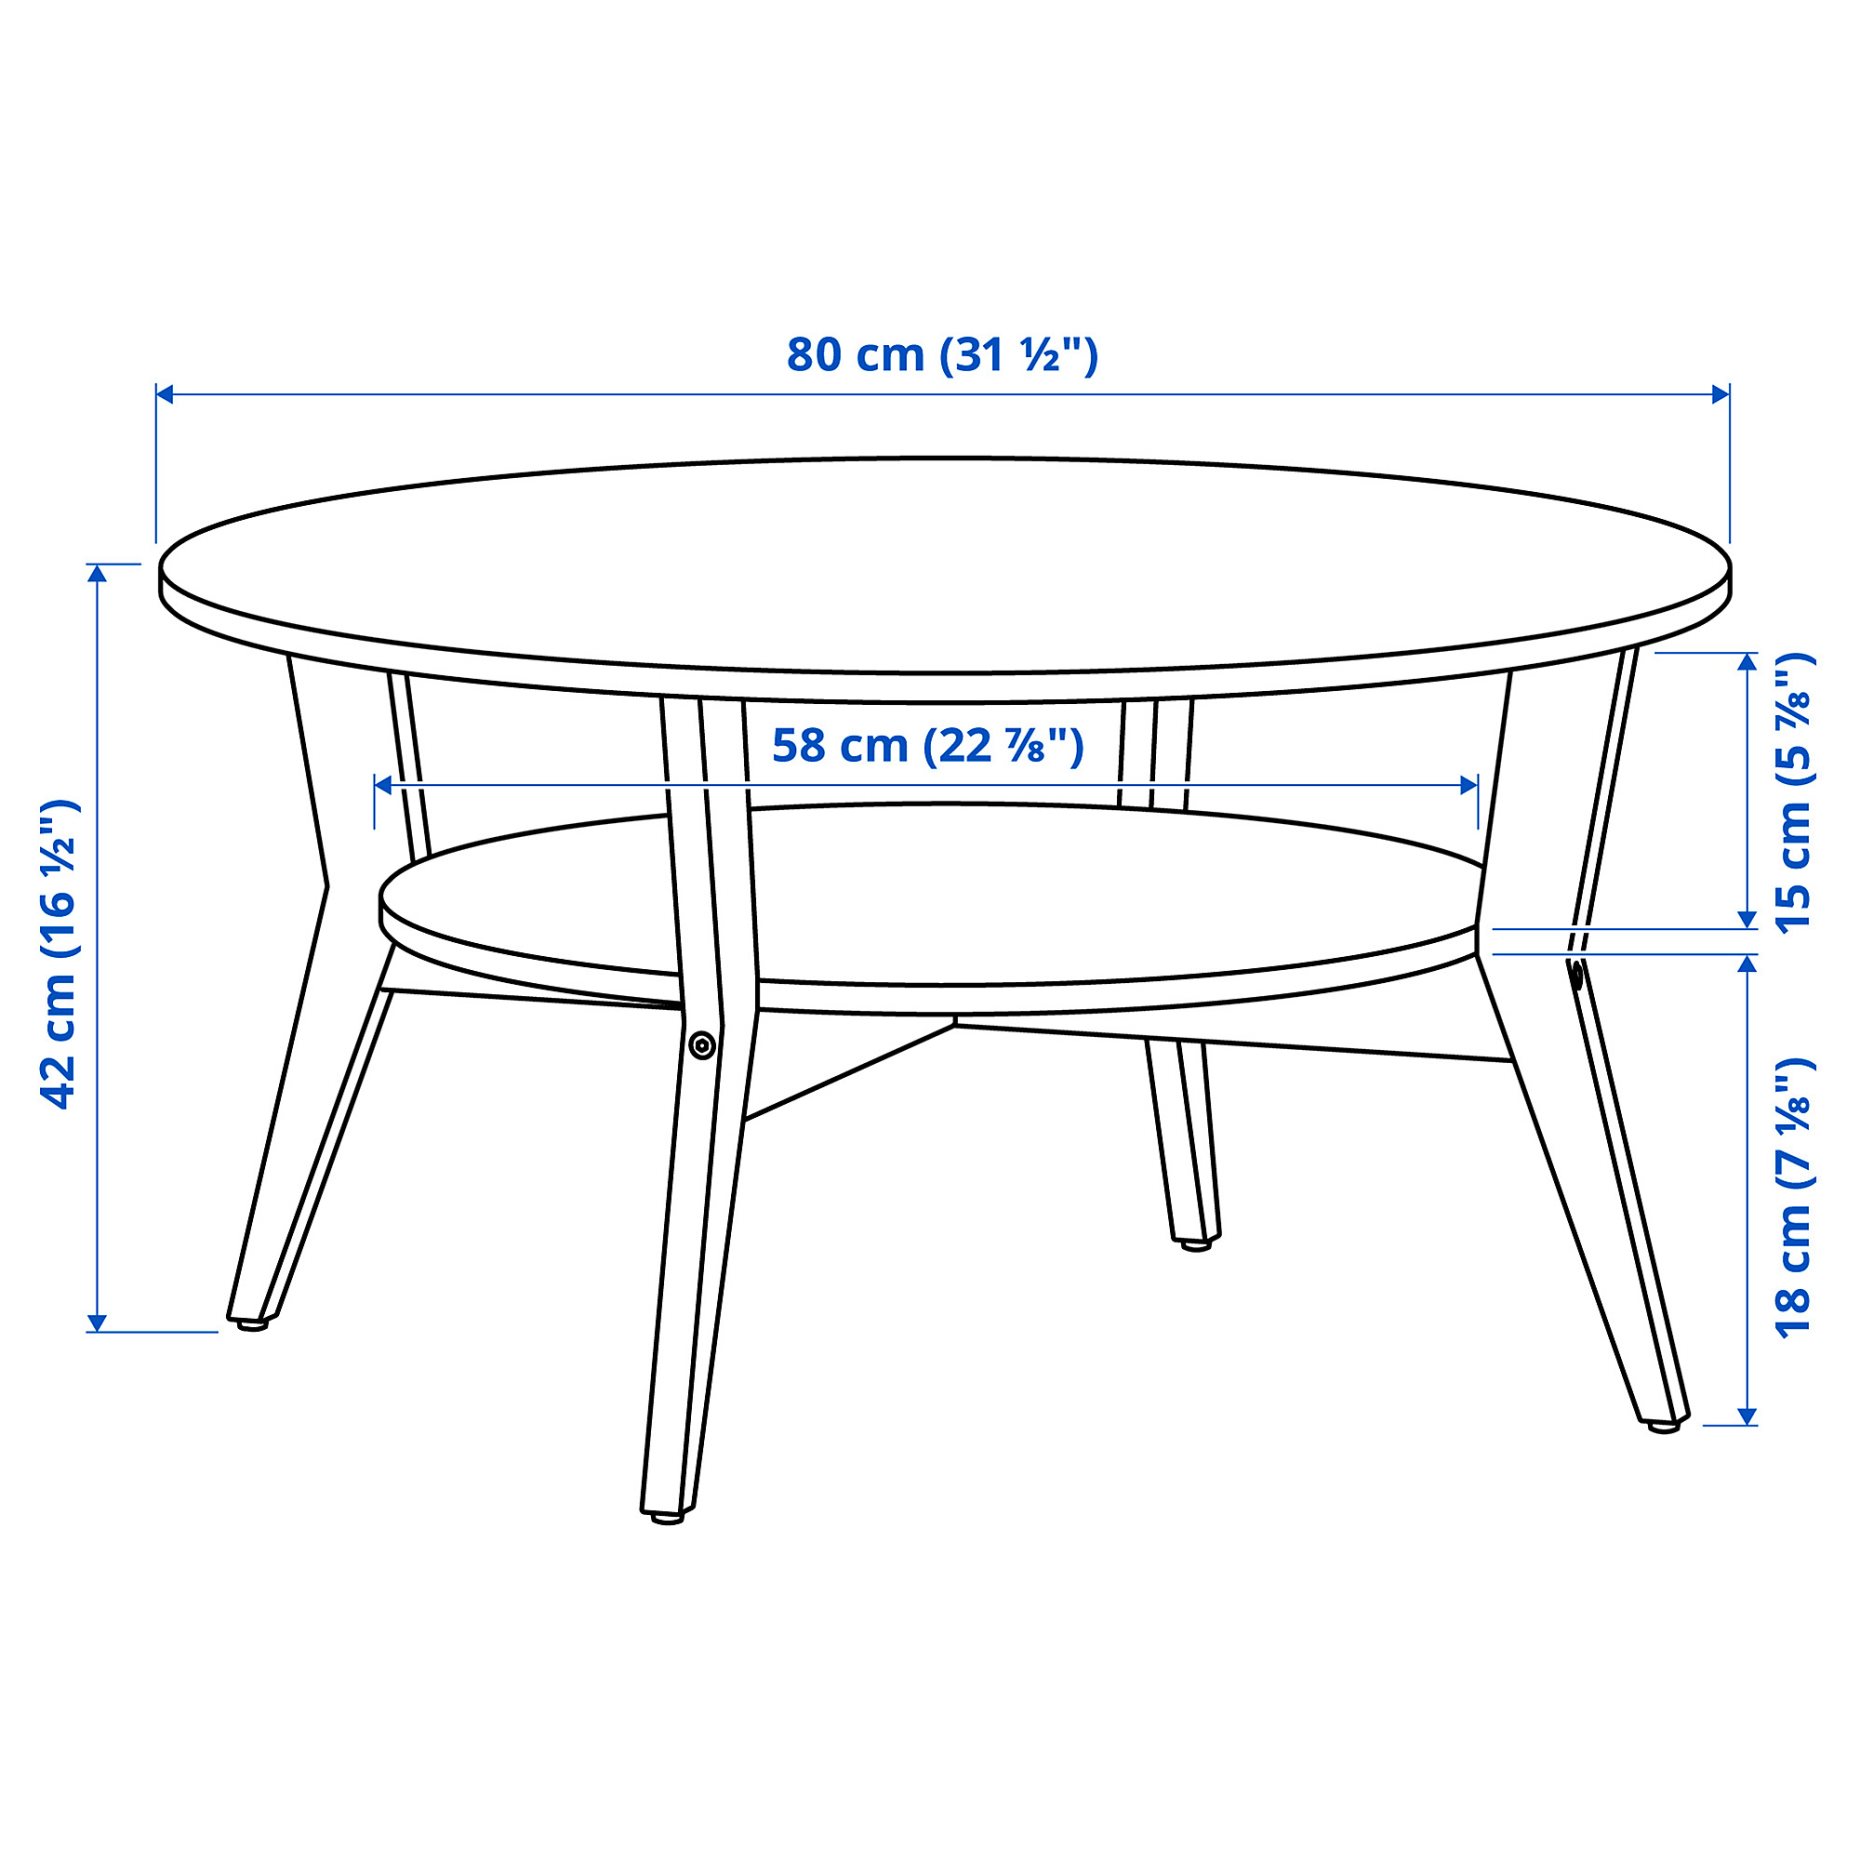 JAKOBSFORS, coffee table, 80 cm, 505.151.67